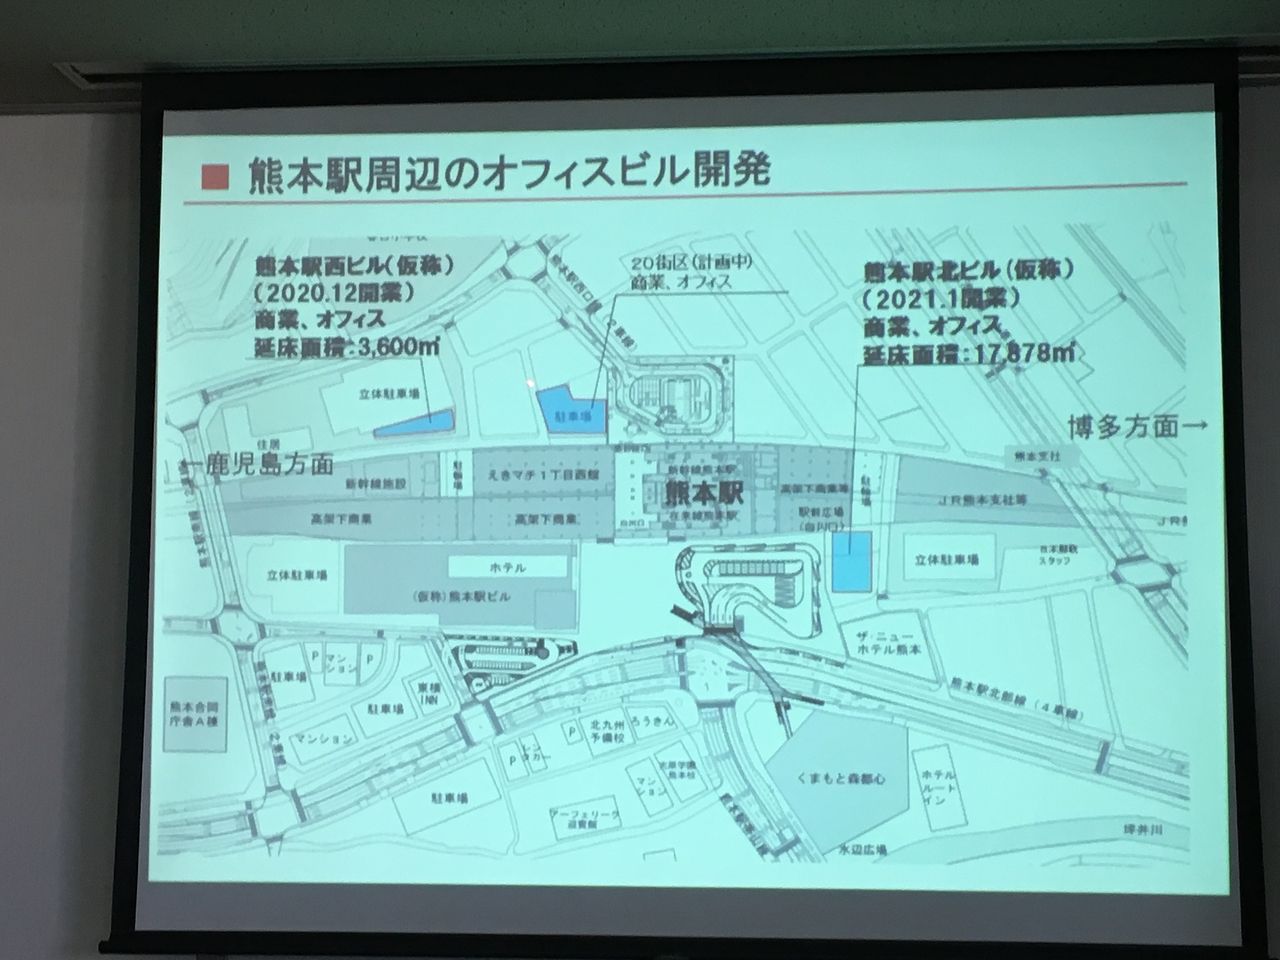 熊本駅周辺のオフィスビル開発